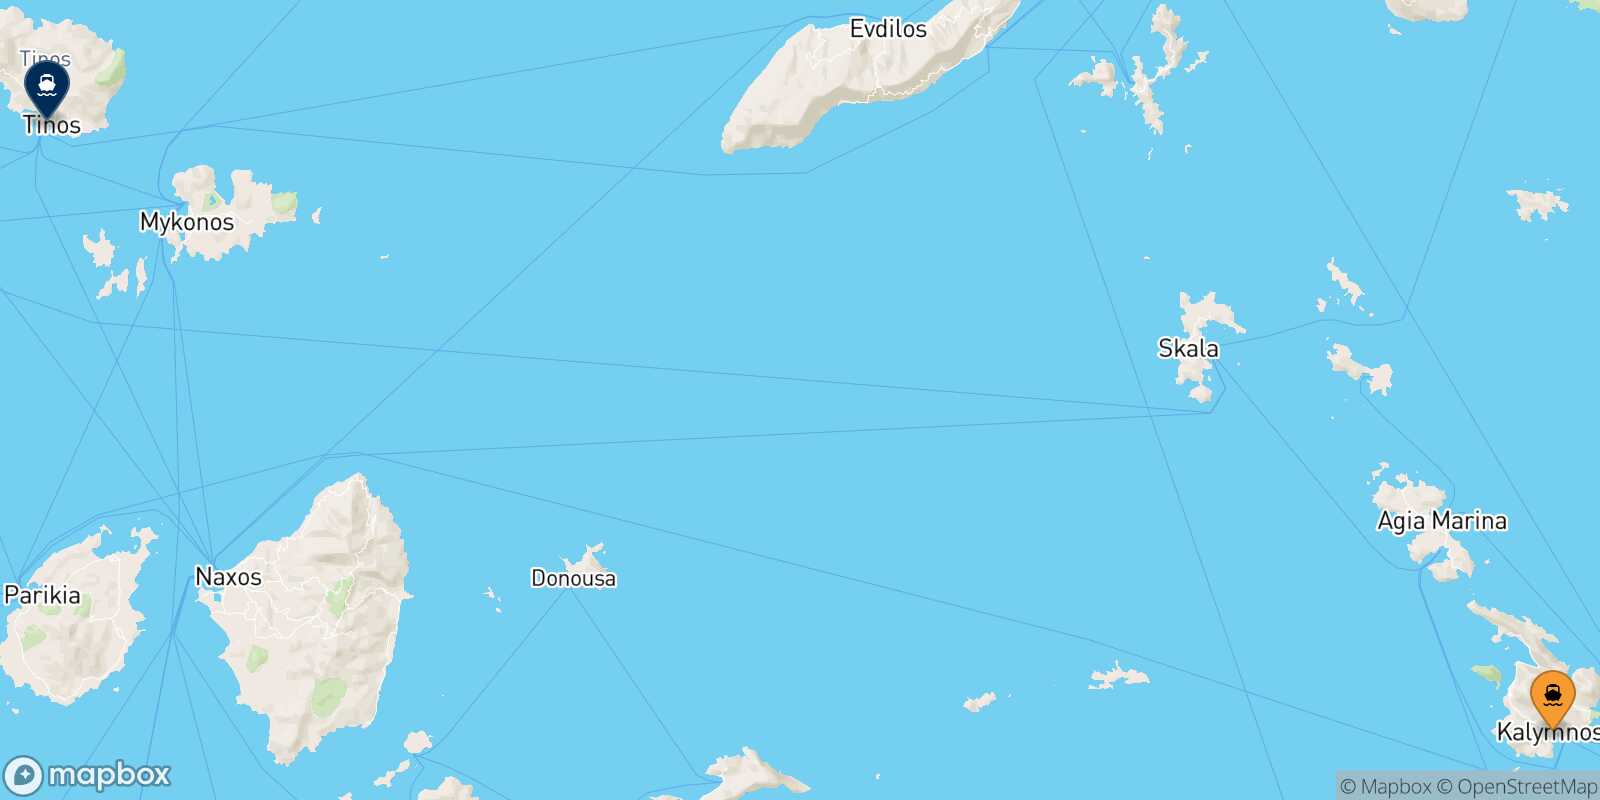 Mappa della rotta Kalymnos Tinos